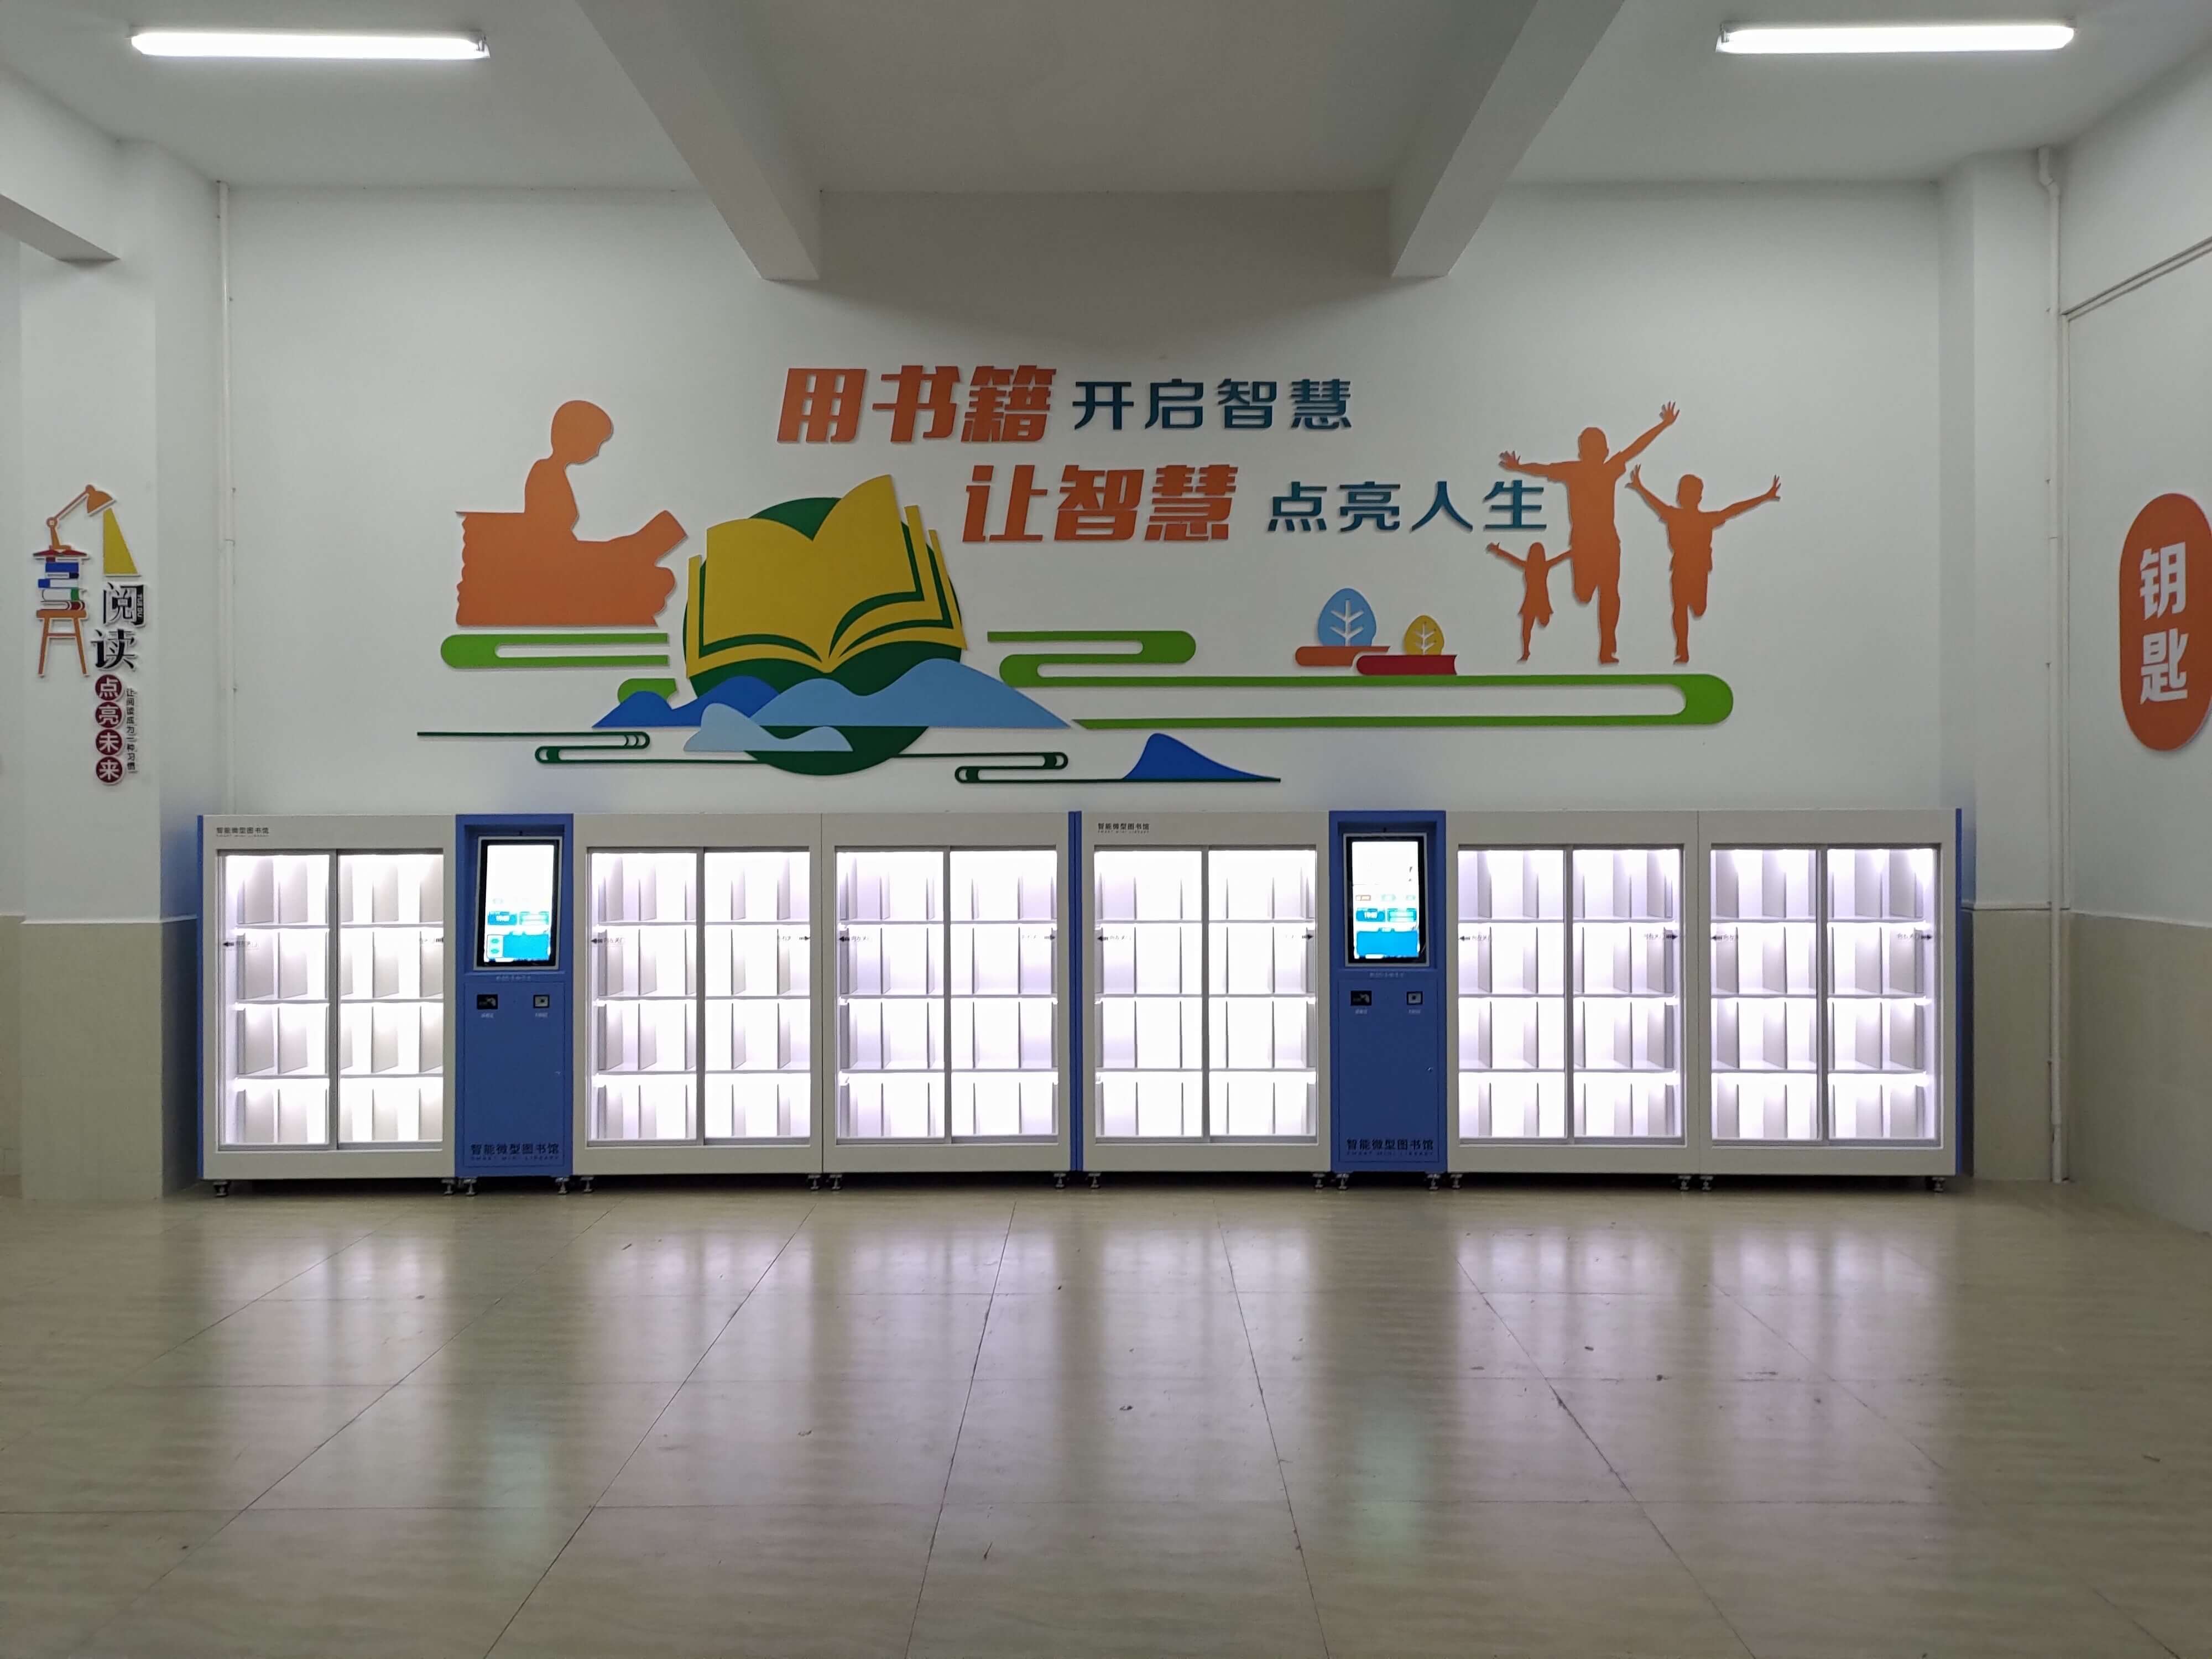 Meizhou Shejiang Central Primary School